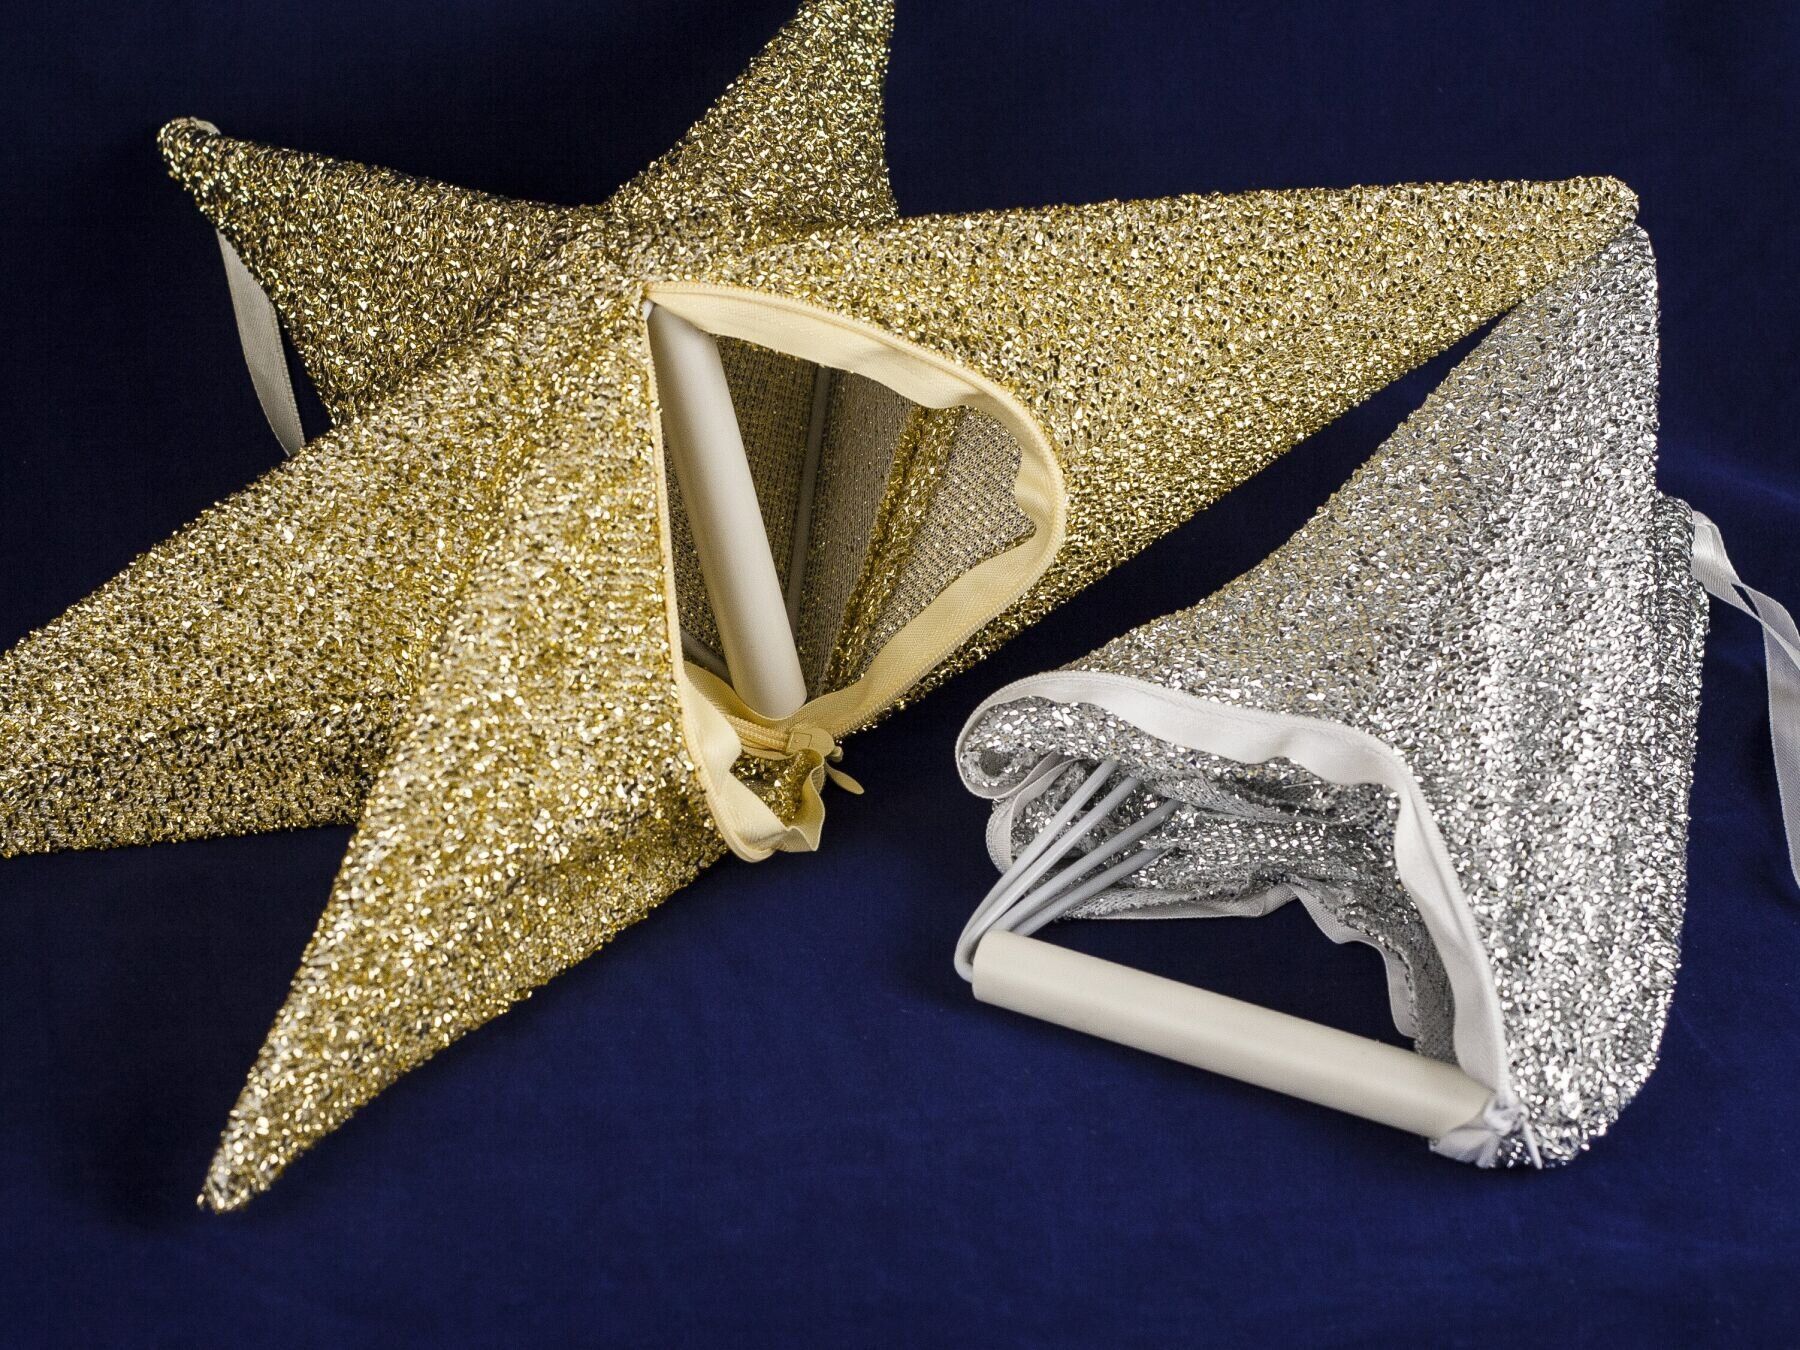 Новорічний декор підвісна зірка з тканини, жовте золото, 65 см